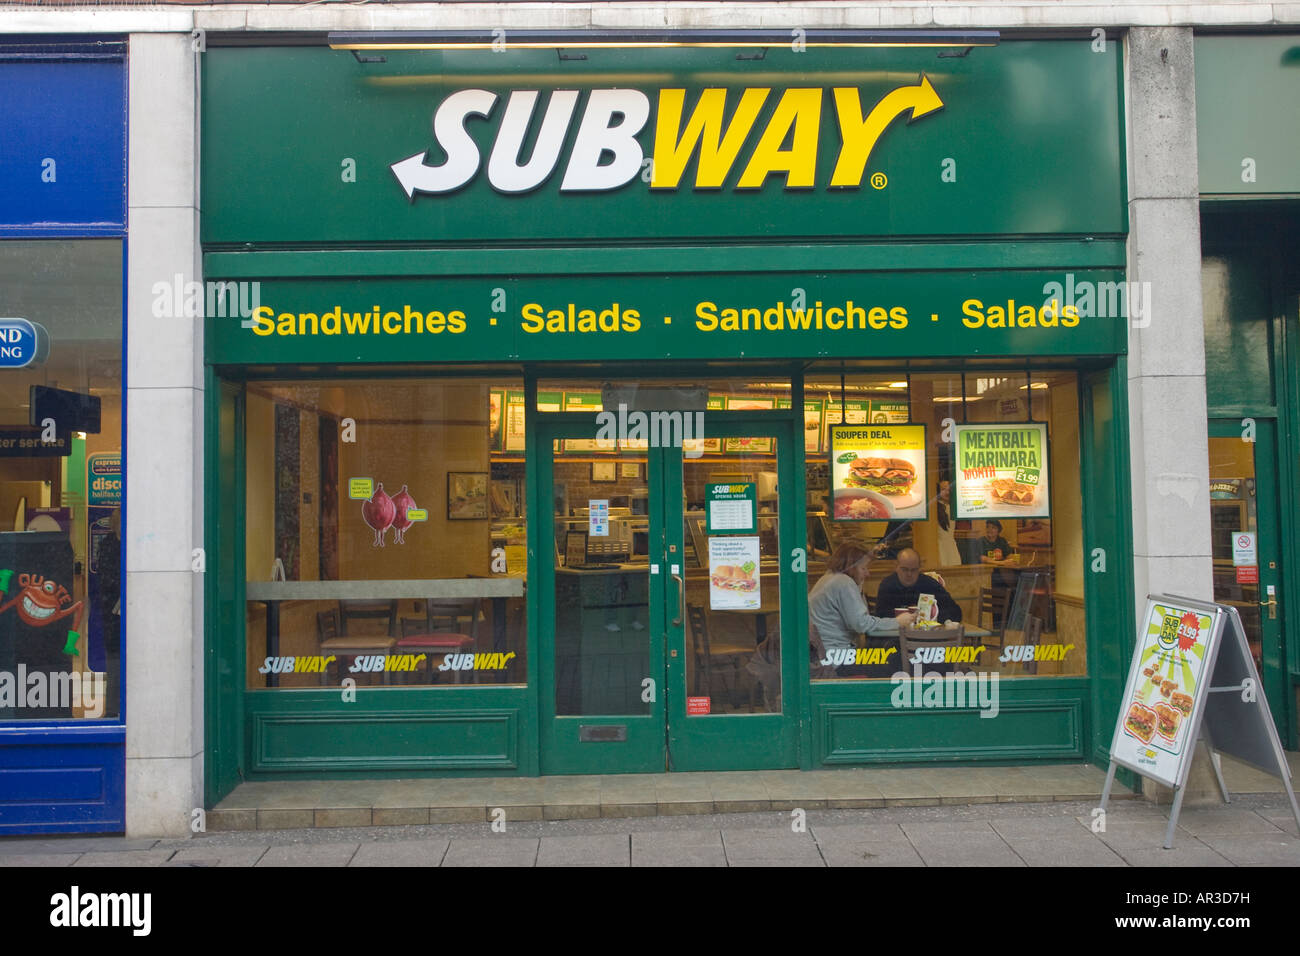 Subway restaurant in Thetford, UK Stock Photo